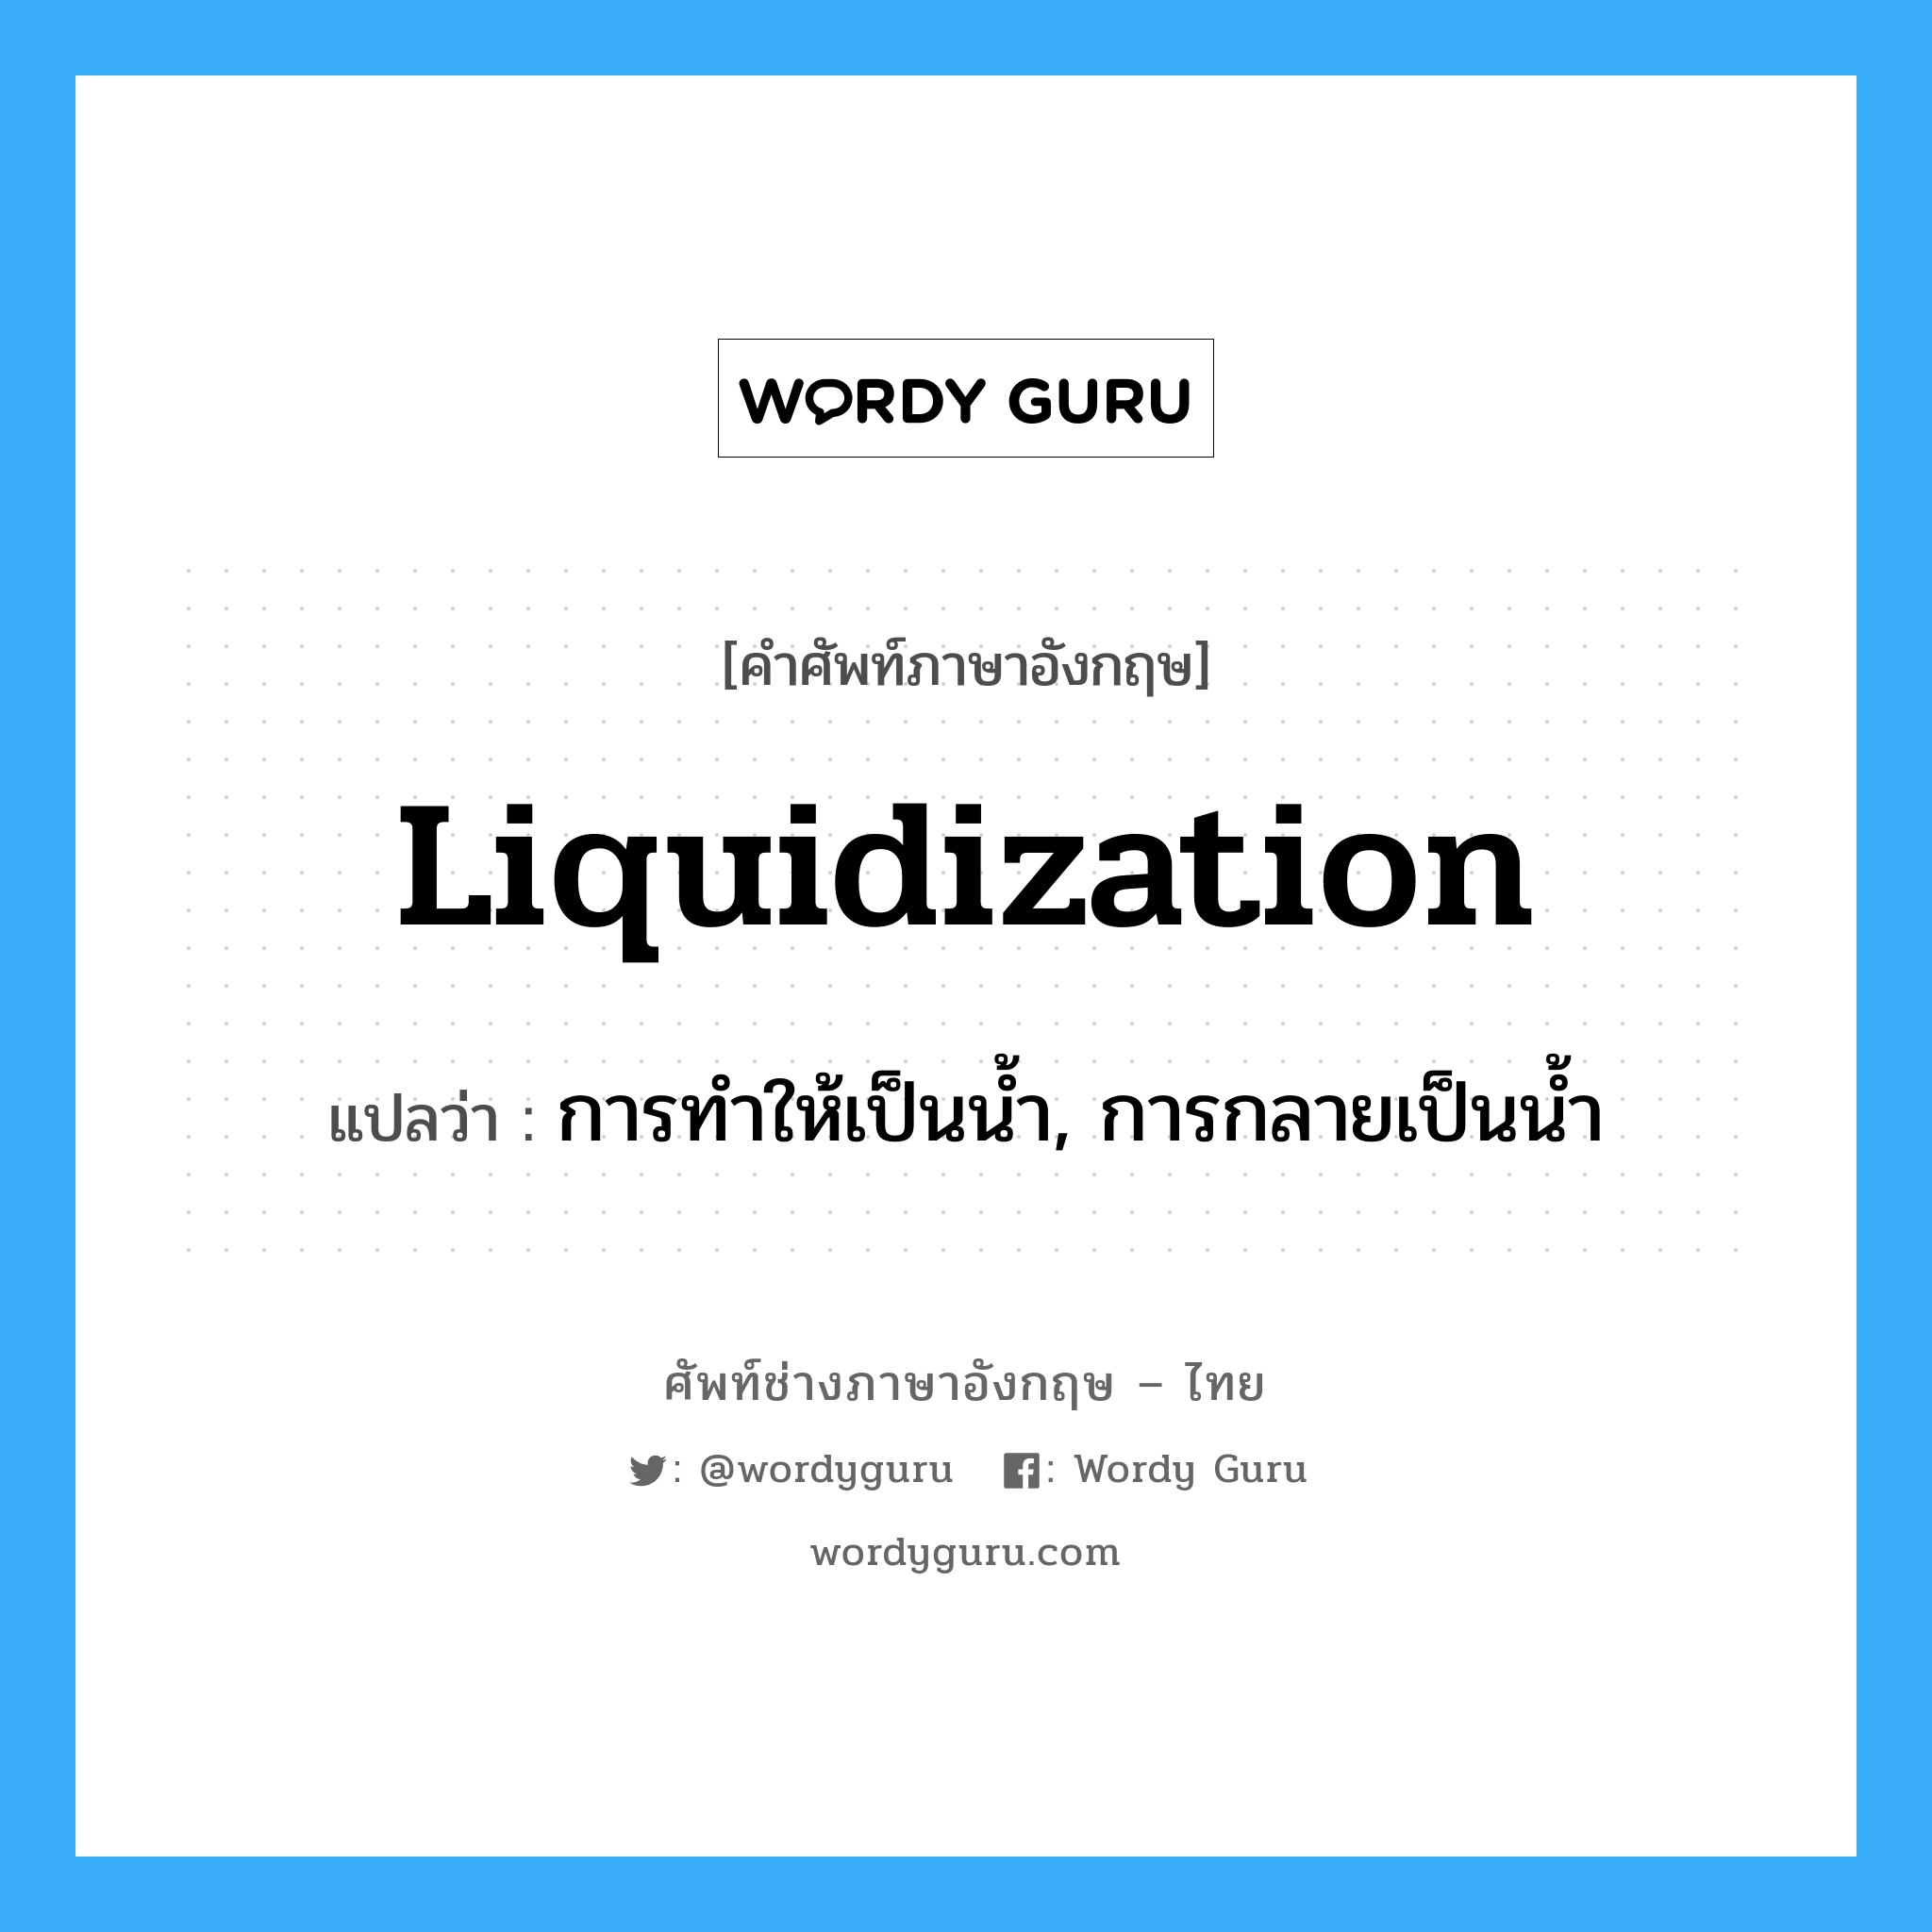 การทำให้เป็นน้ำ, การกลายเป็นน้ำ ภาษาอังกฤษ?, คำศัพท์ช่างภาษาอังกฤษ - ไทย การทำให้เป็นน้ำ, การกลายเป็นน้ำ คำศัพท์ภาษาอังกฤษ การทำให้เป็นน้ำ, การกลายเป็นน้ำ แปลว่า liquidization